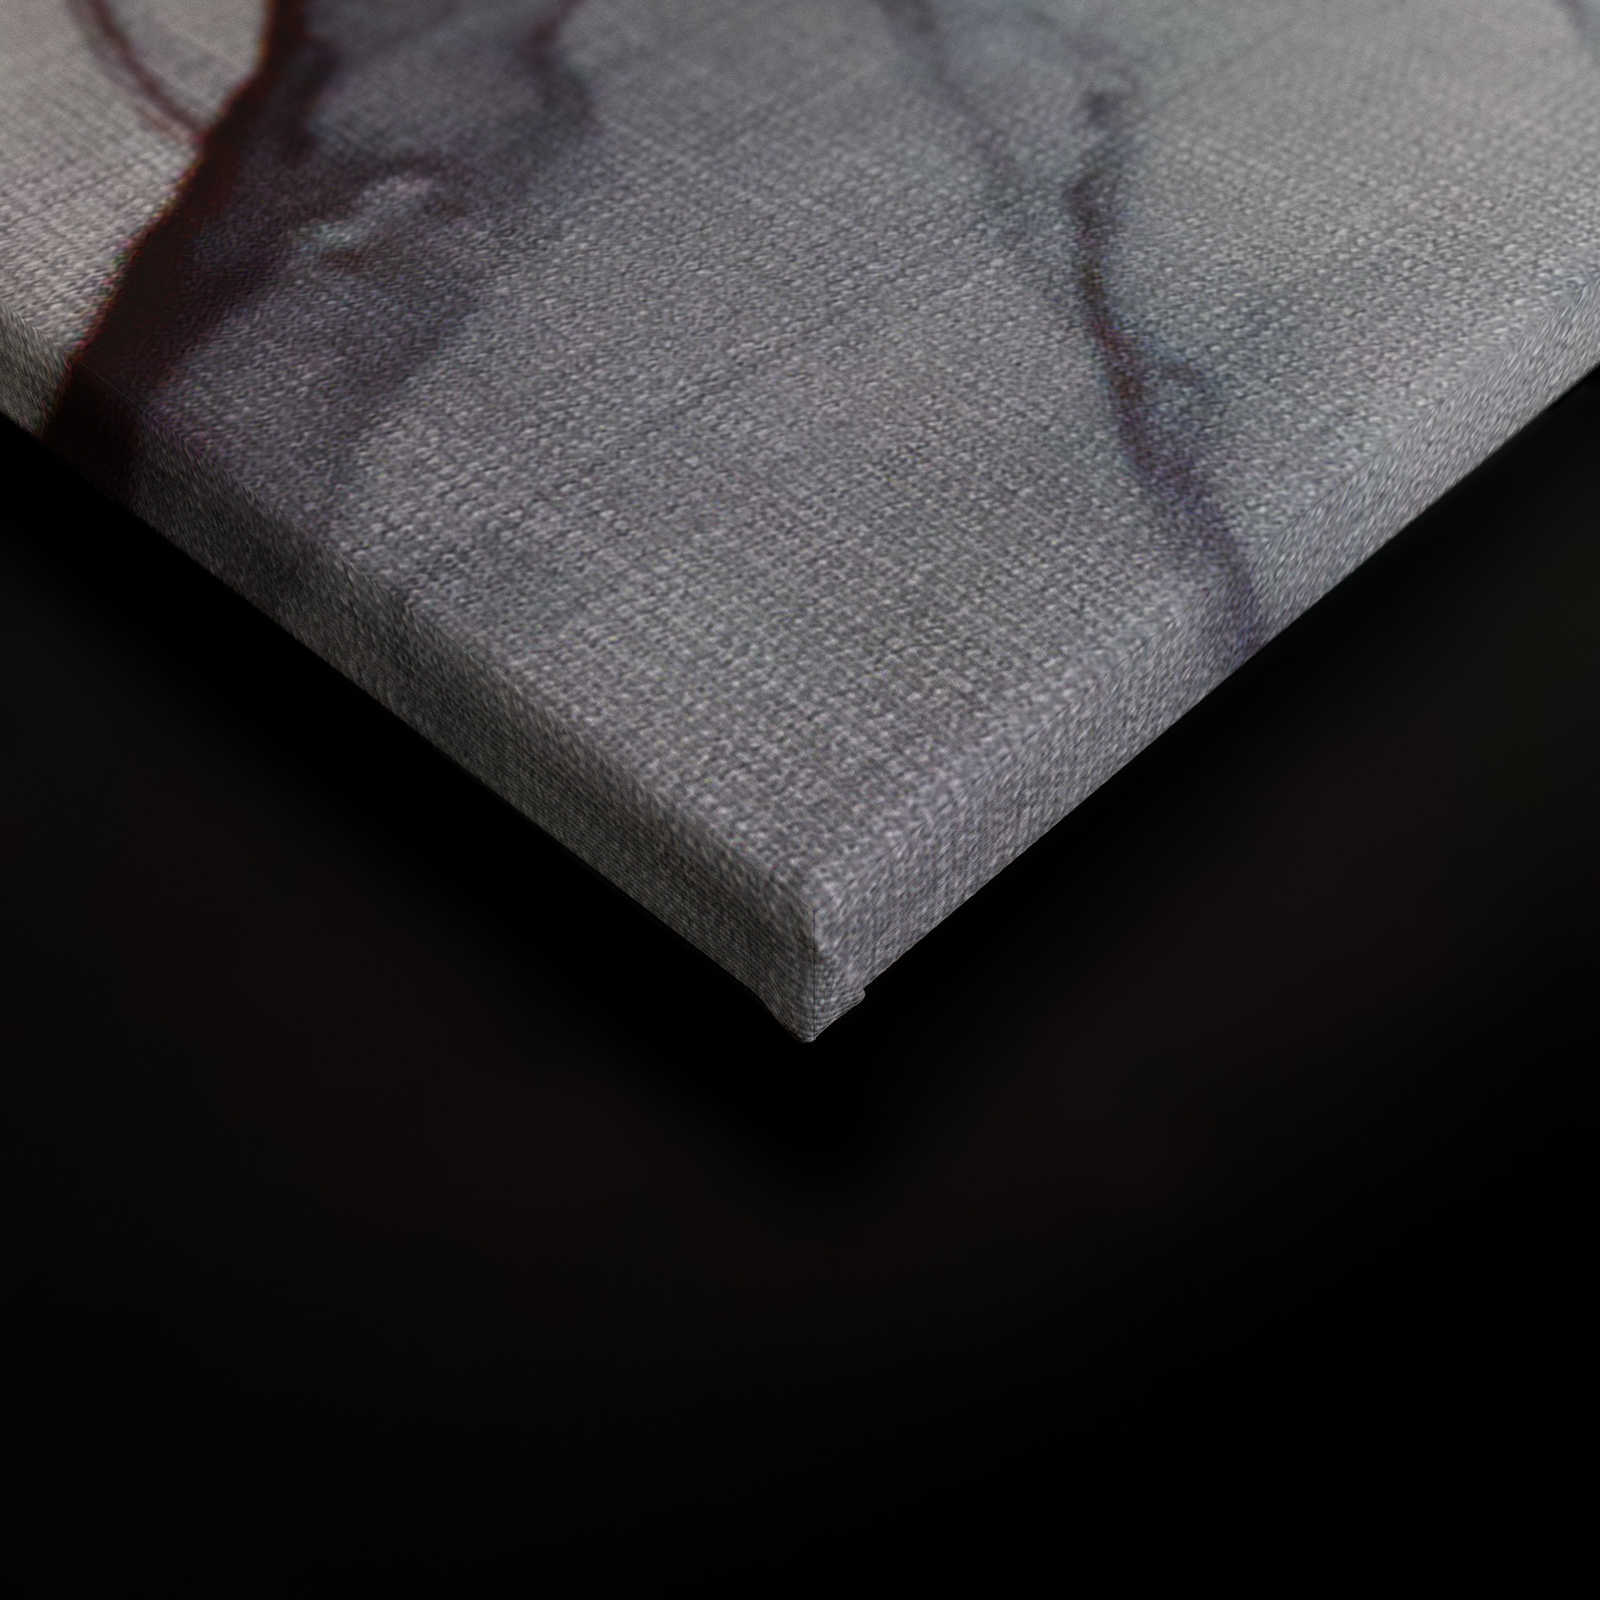             Quadro su tela con motivo a marmo in look lino - 0,90 m x 0,60 m
        